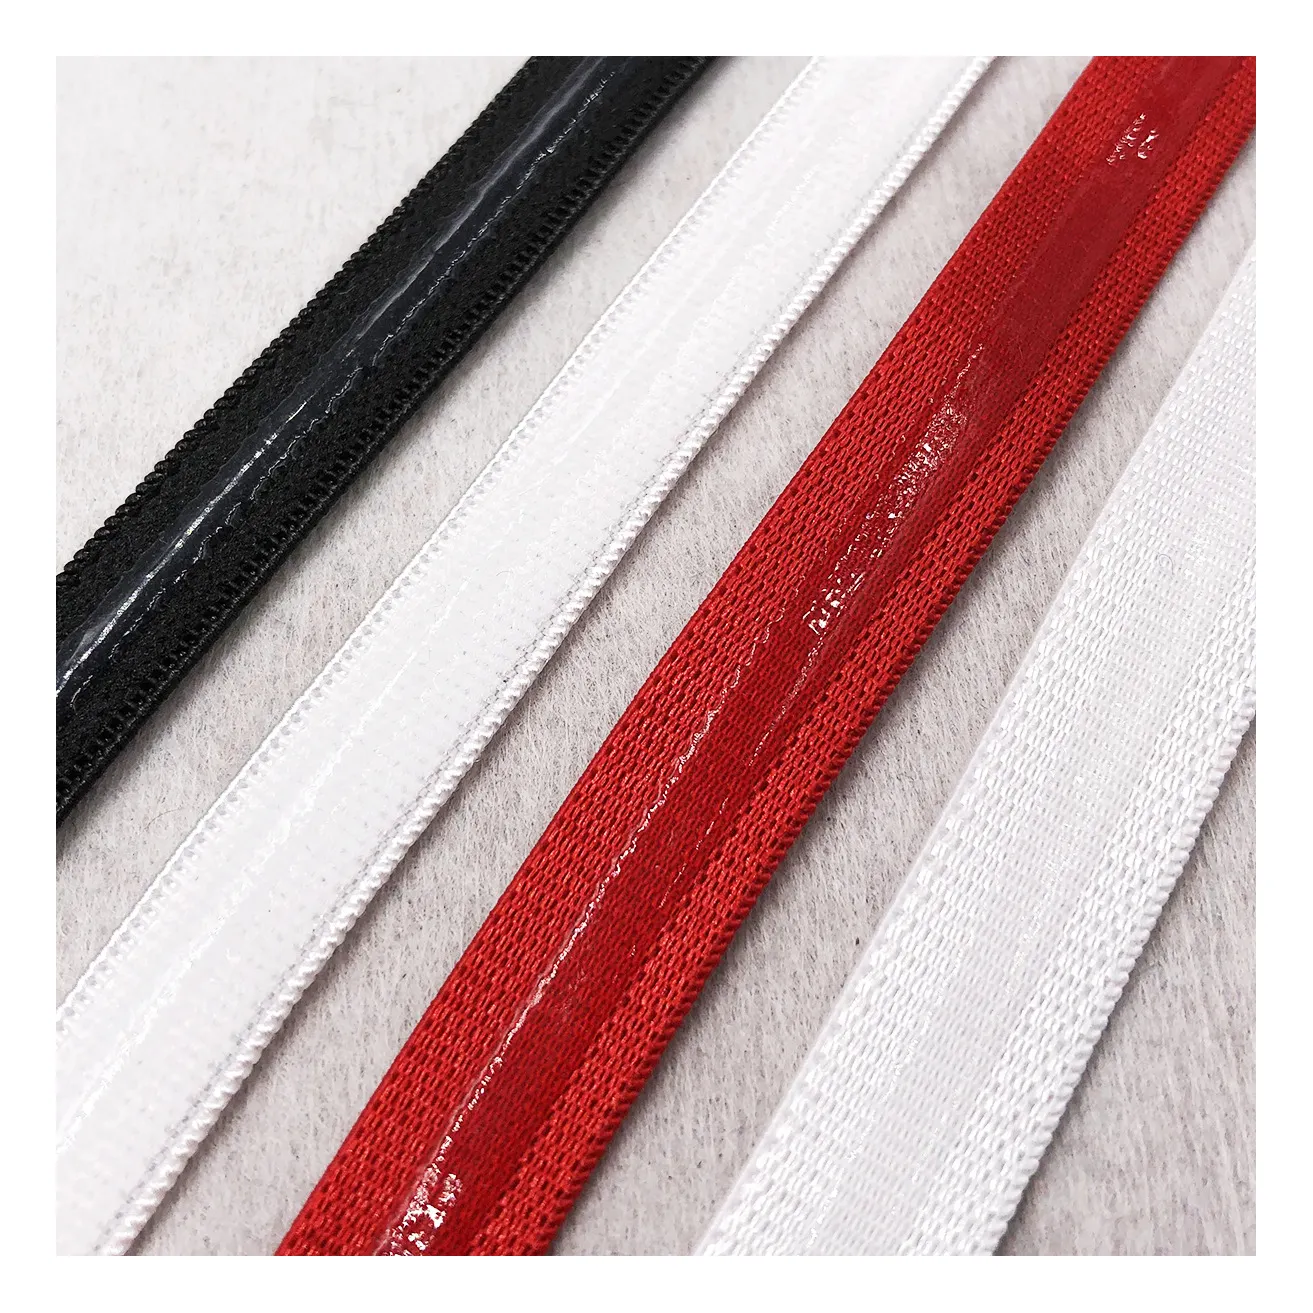 Anti-Slip Silicone Elastic schnur Non-Slip Silicone mehrere farbe optionen Elastic Band für Garments gurtband